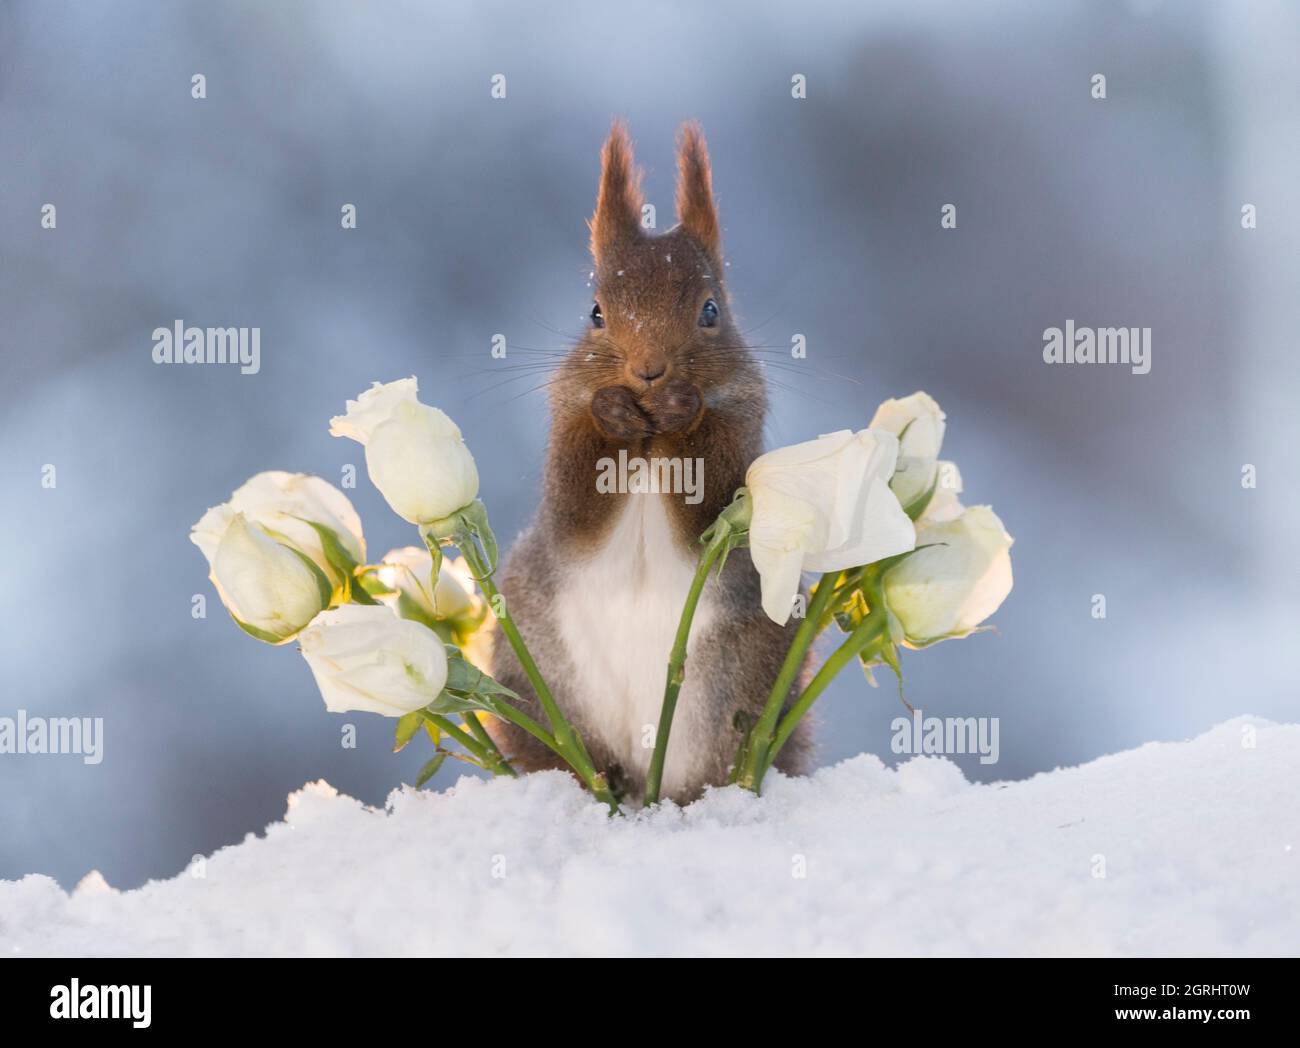 Red squirrelis steht zwischen den weißen Rosen im Schnee Stockfoto